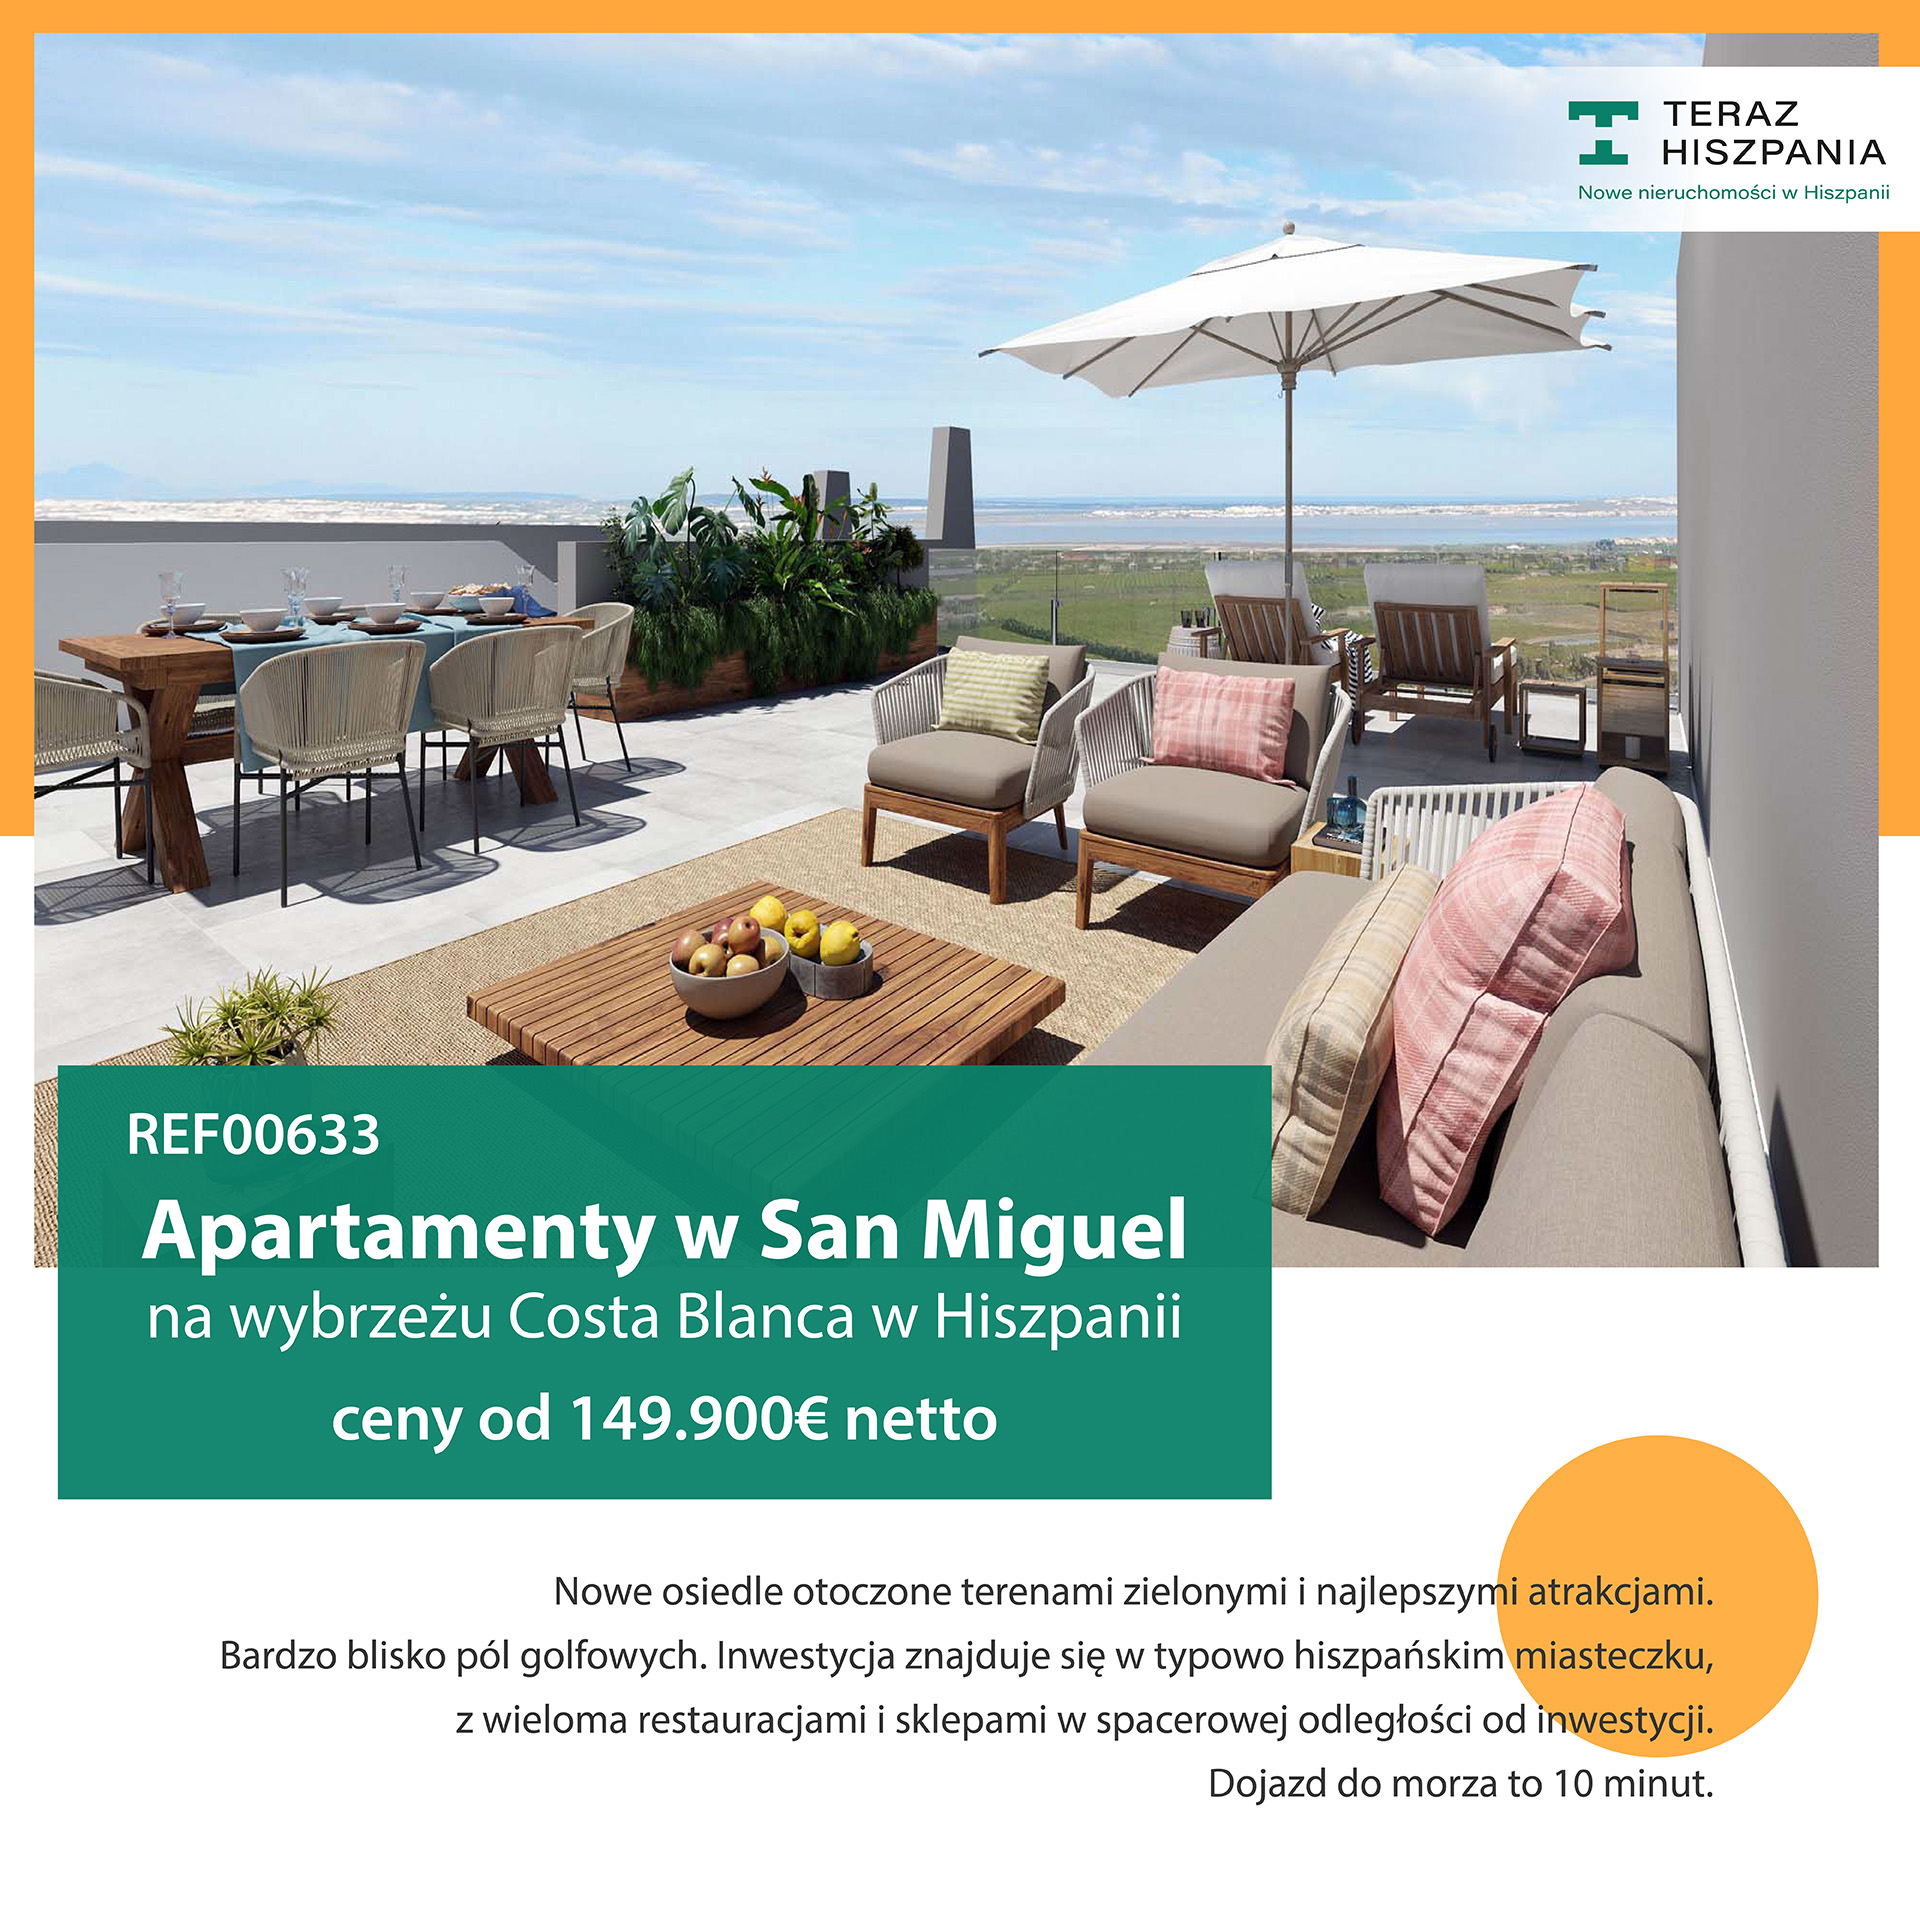 Apartamenty na sprzedaż w Hiszpanii w San Miguel de Salinas w pobliżu pola golfowego.